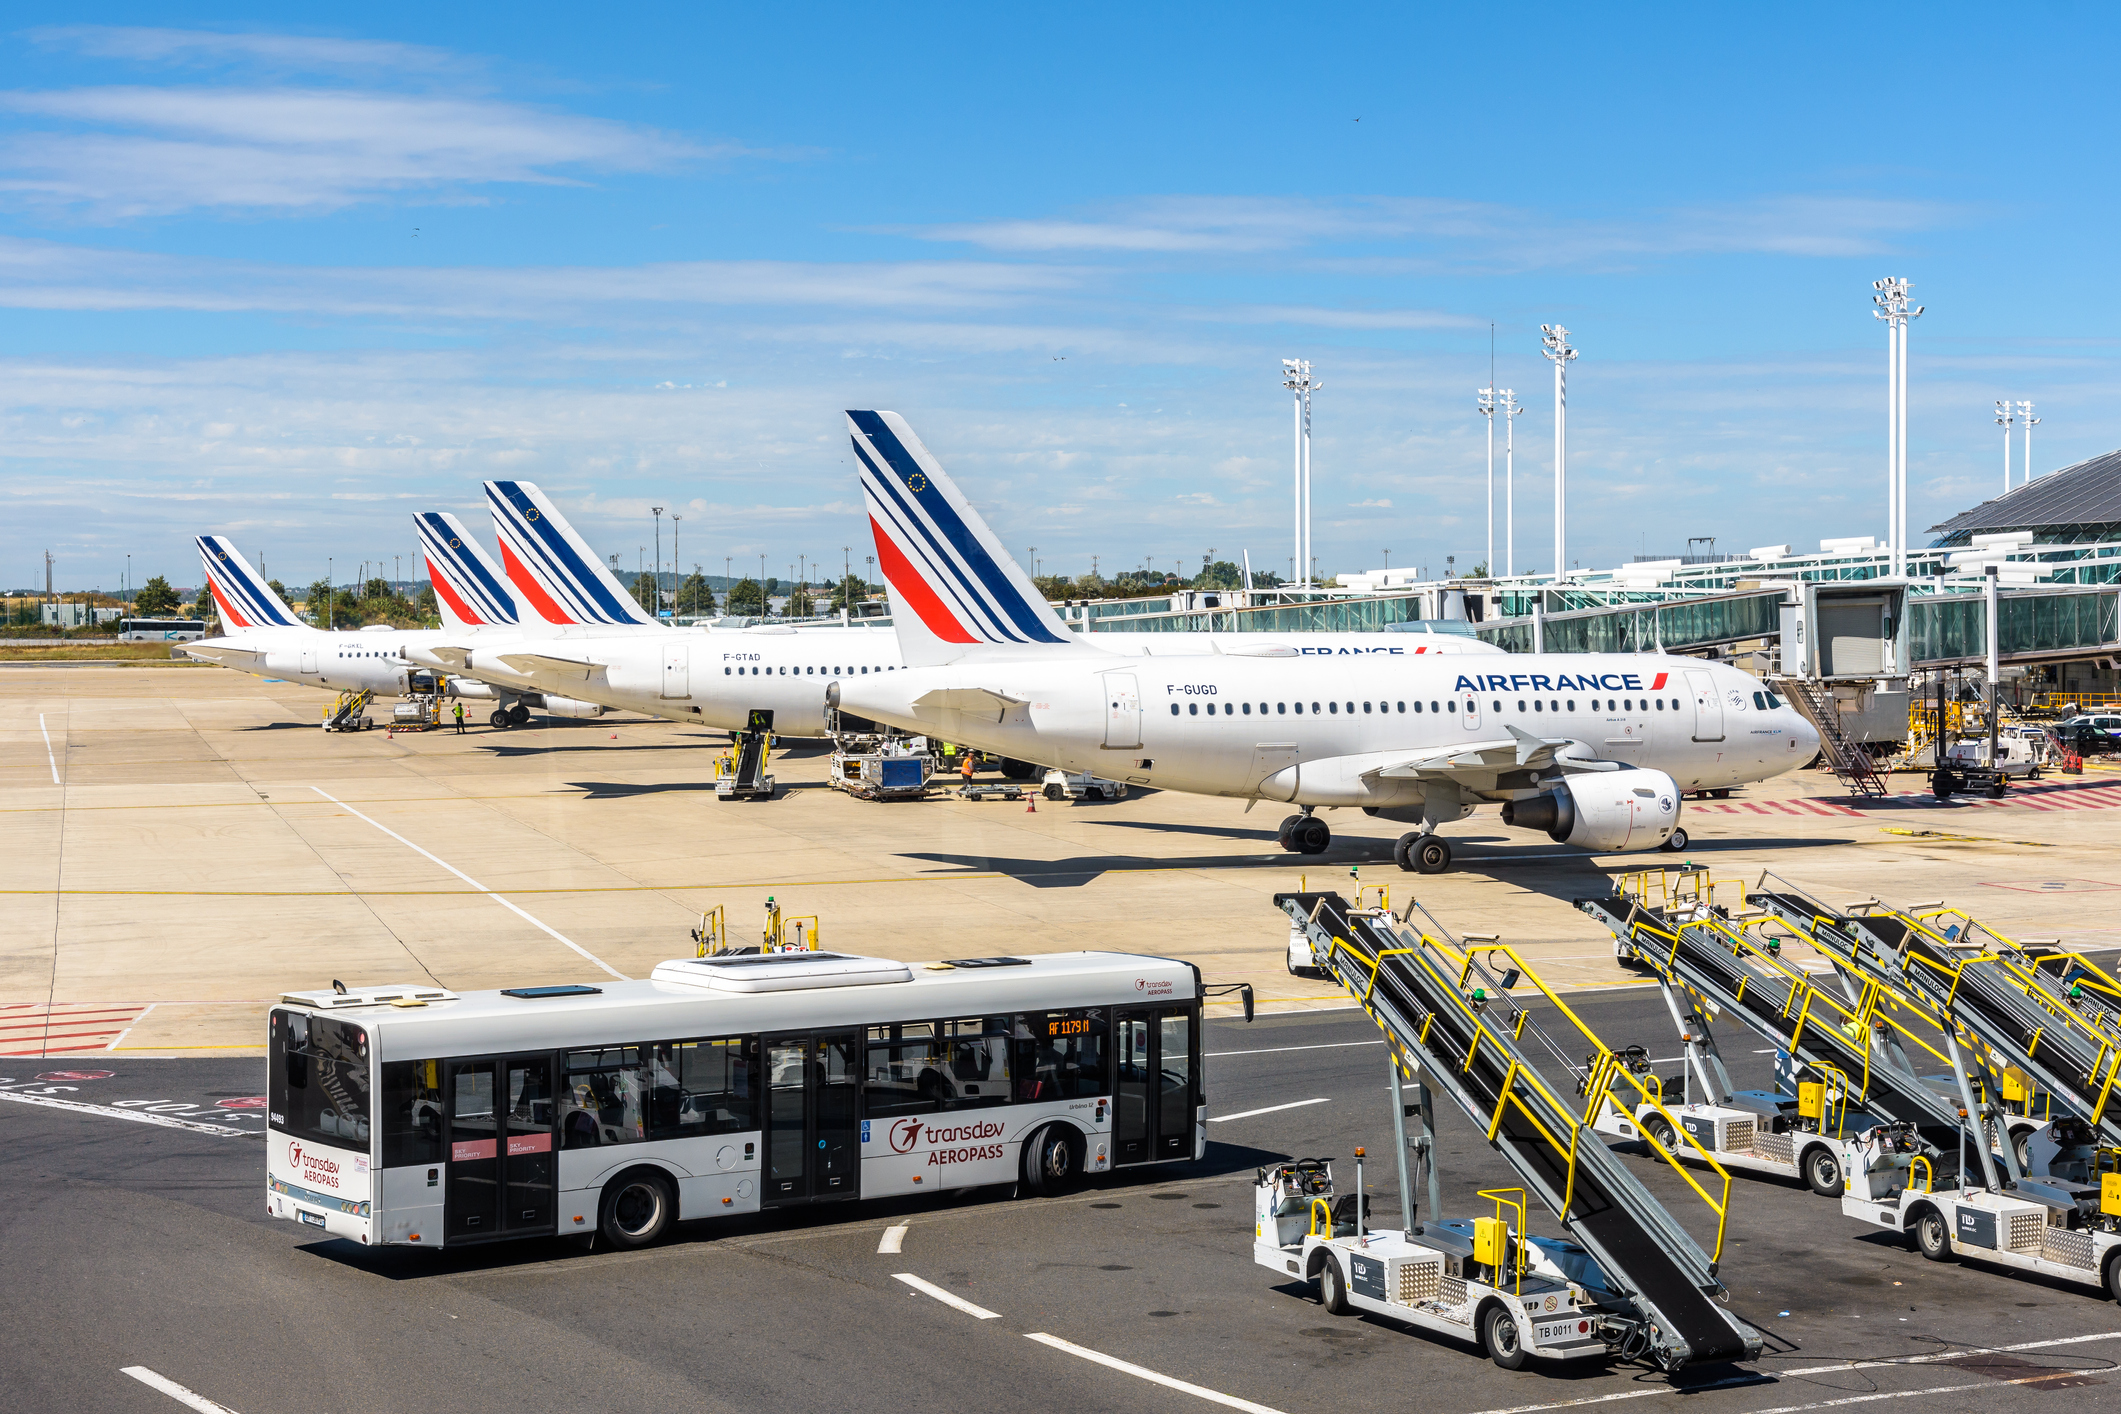 Een rij Air France vliegtuigen staat naast elkaar geparkeerd, op de voorgrond brengt een bus passagiers naar de vliegtuigen.